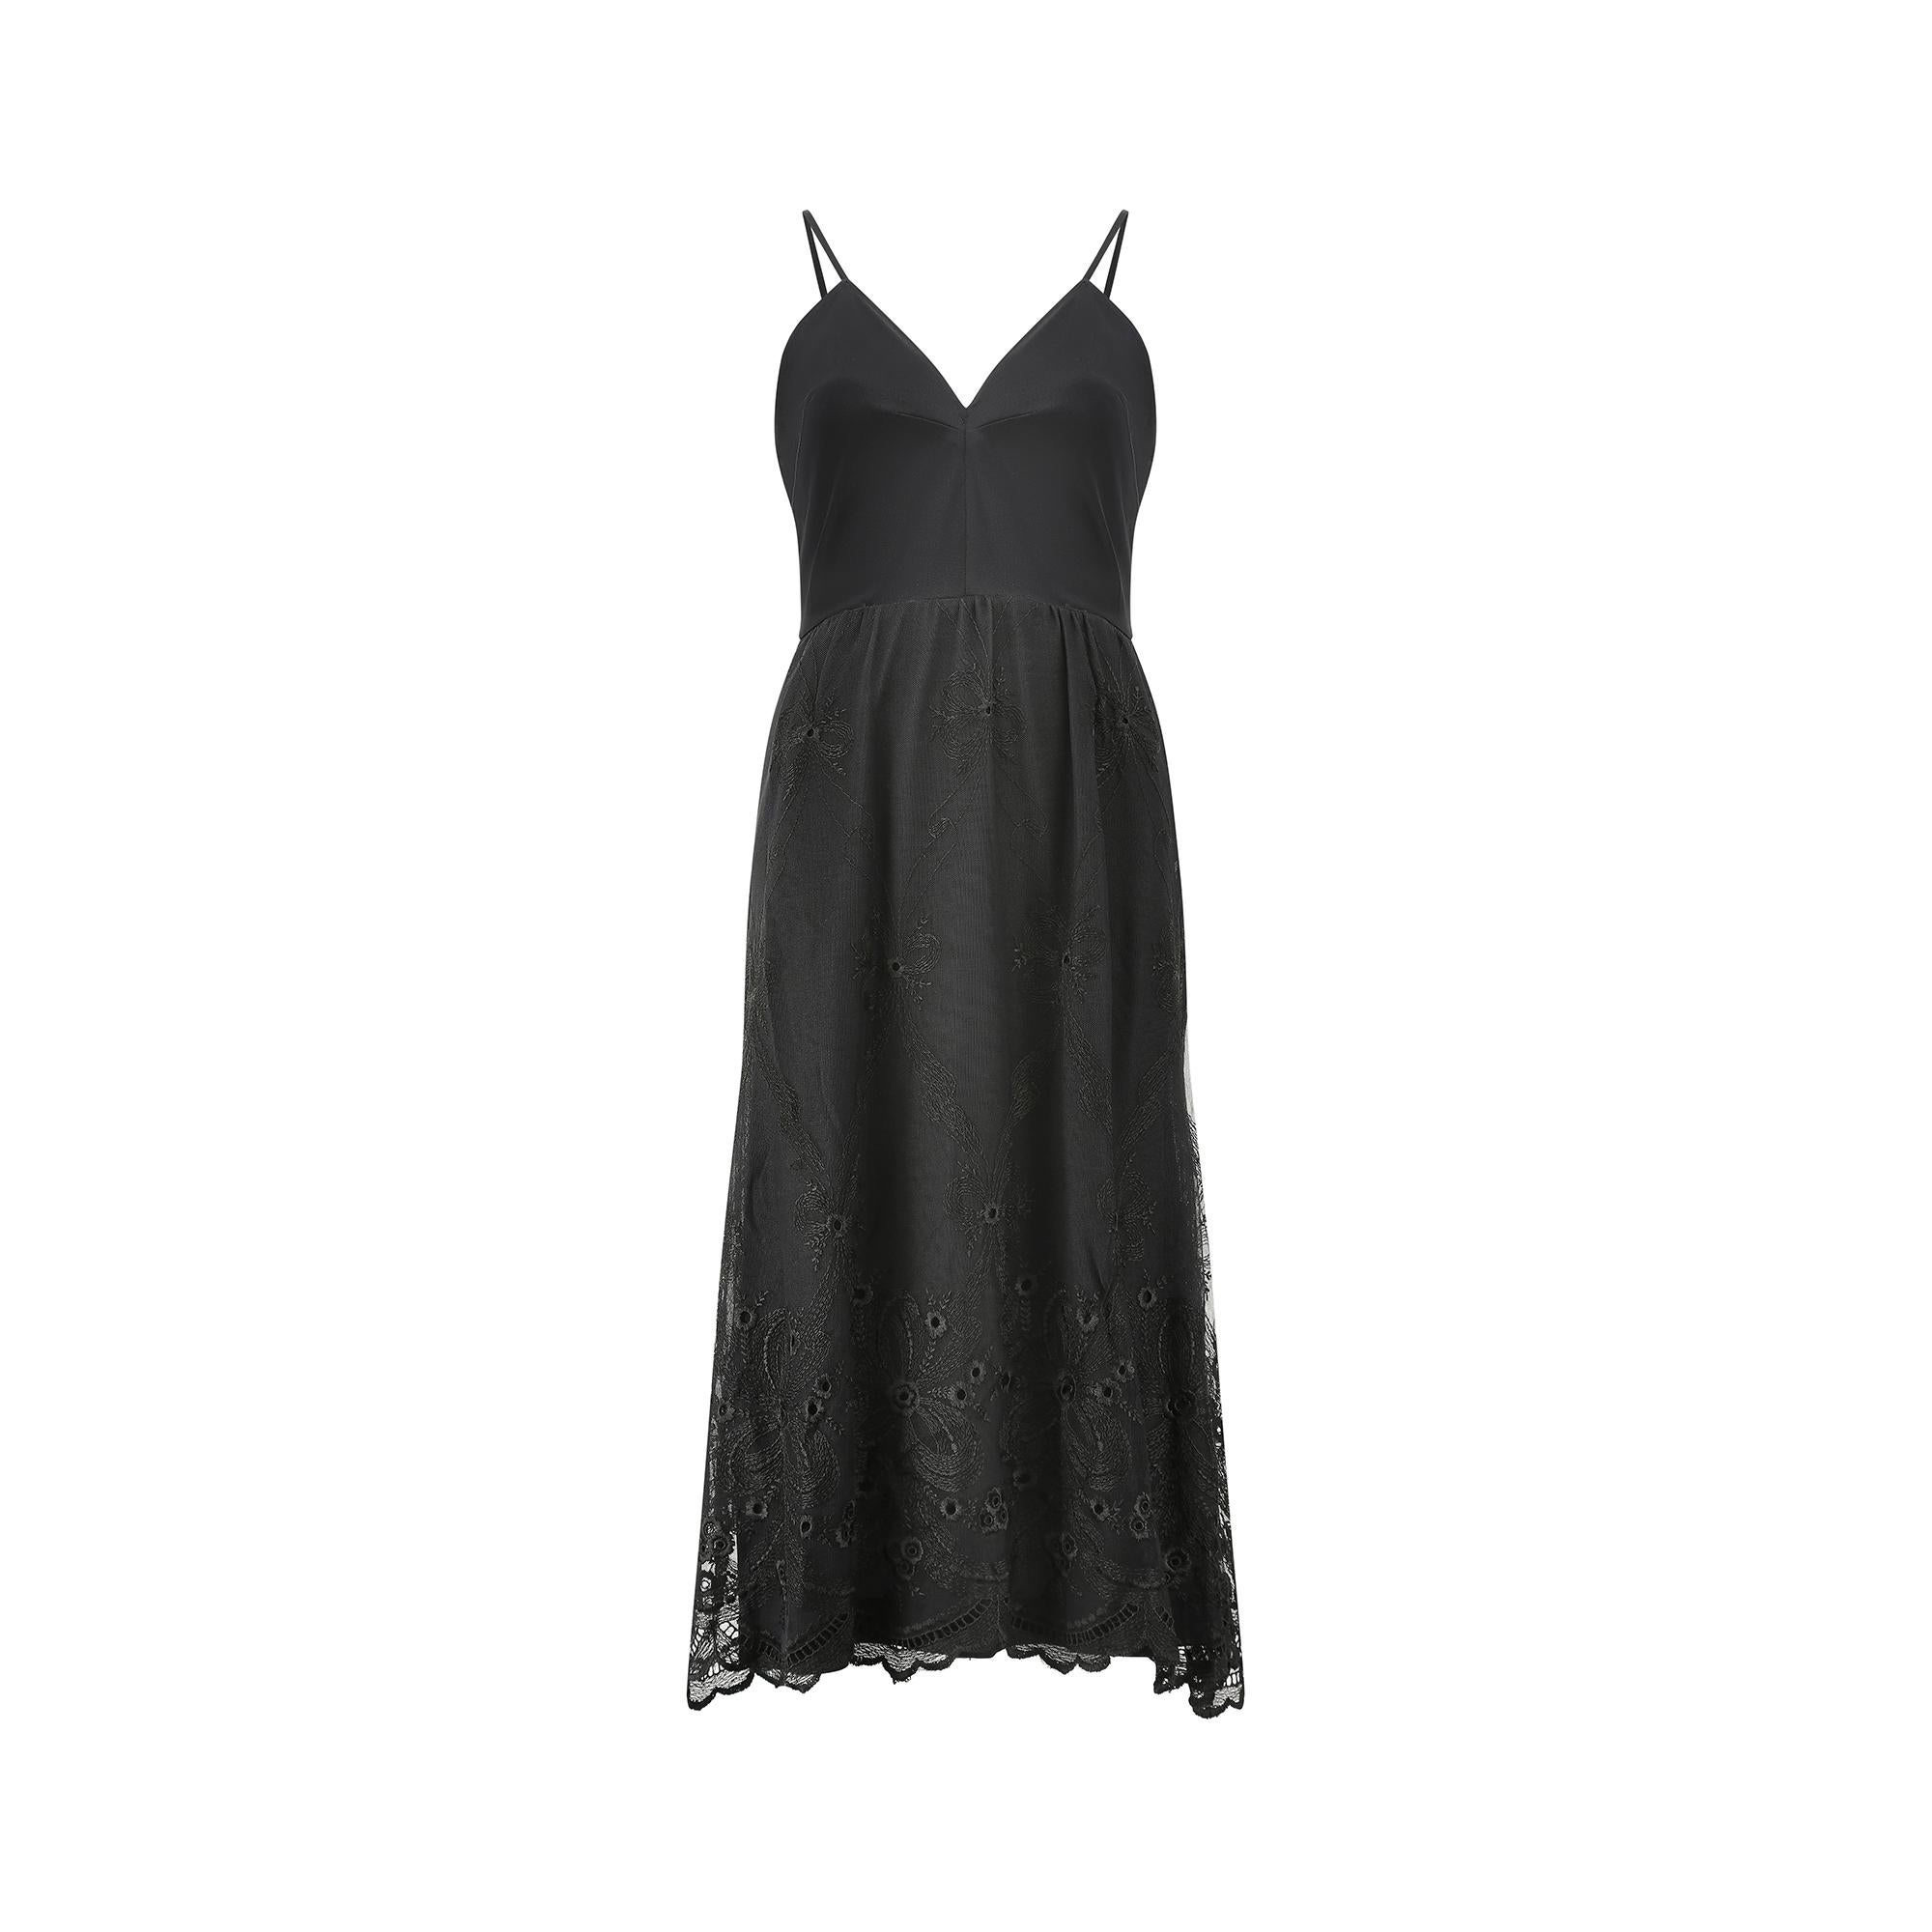 Une bonne robe noire des années 1970 de la marque patrimoniale britannique Frank Usher, parfaite pour une cravate noire ou un cocktail. Elle est dotée de bretelles spaghetti et d'un corsage ajusté avec un décolleté en V sur le devant. Le dos est